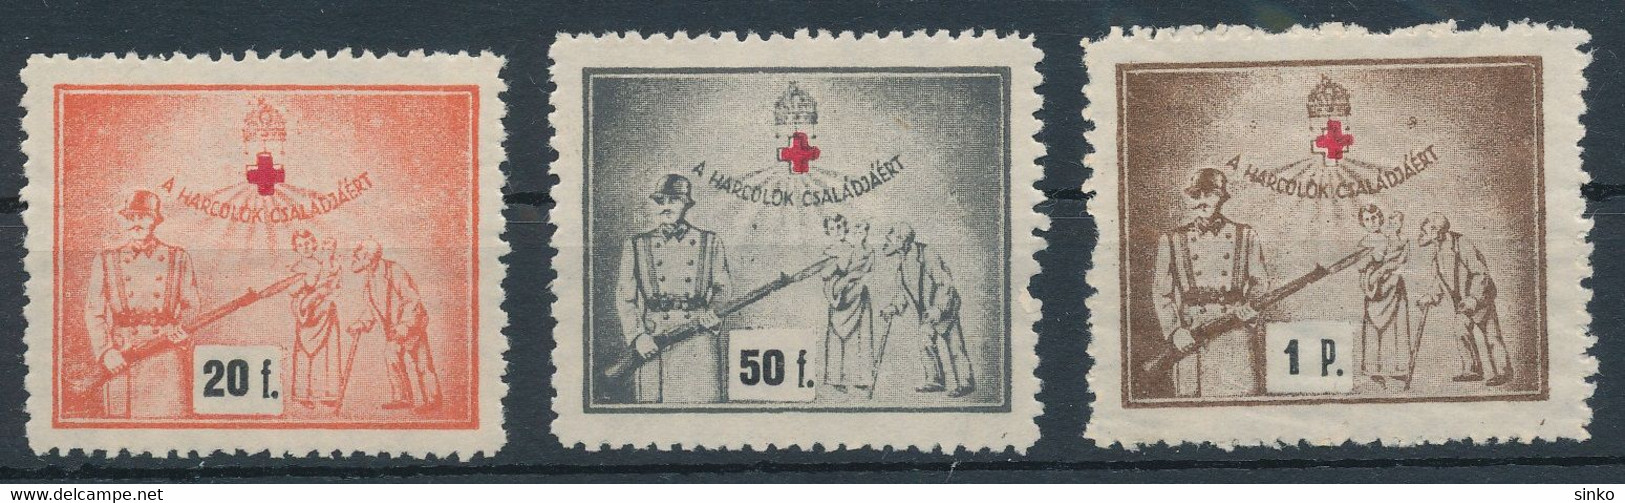 1940s Aid Stamps - Hojas Conmemorativas